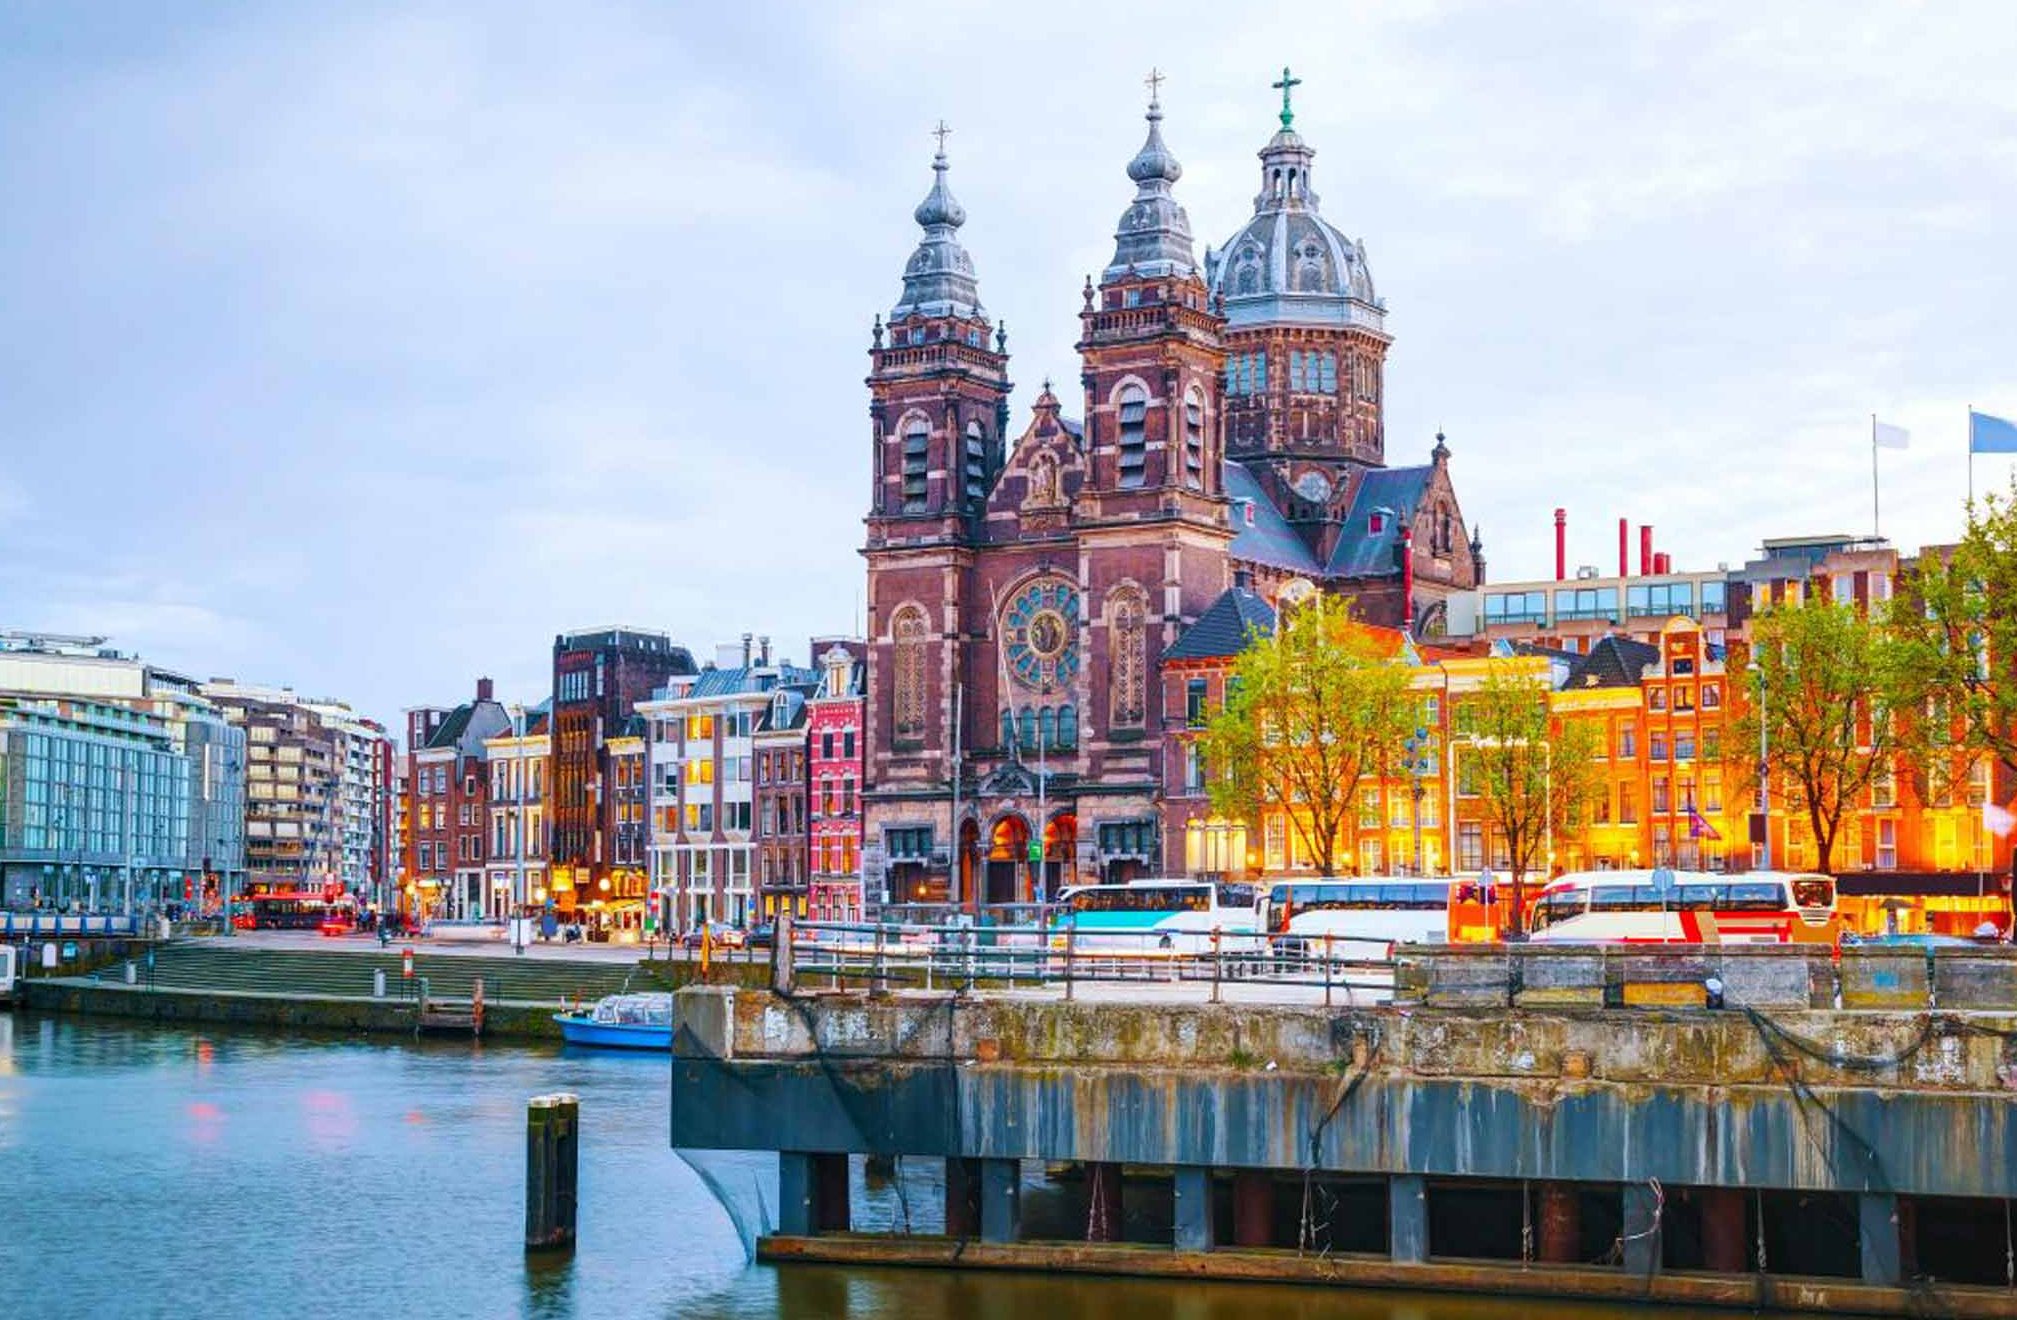 الاماكن السياحية في امستردام 